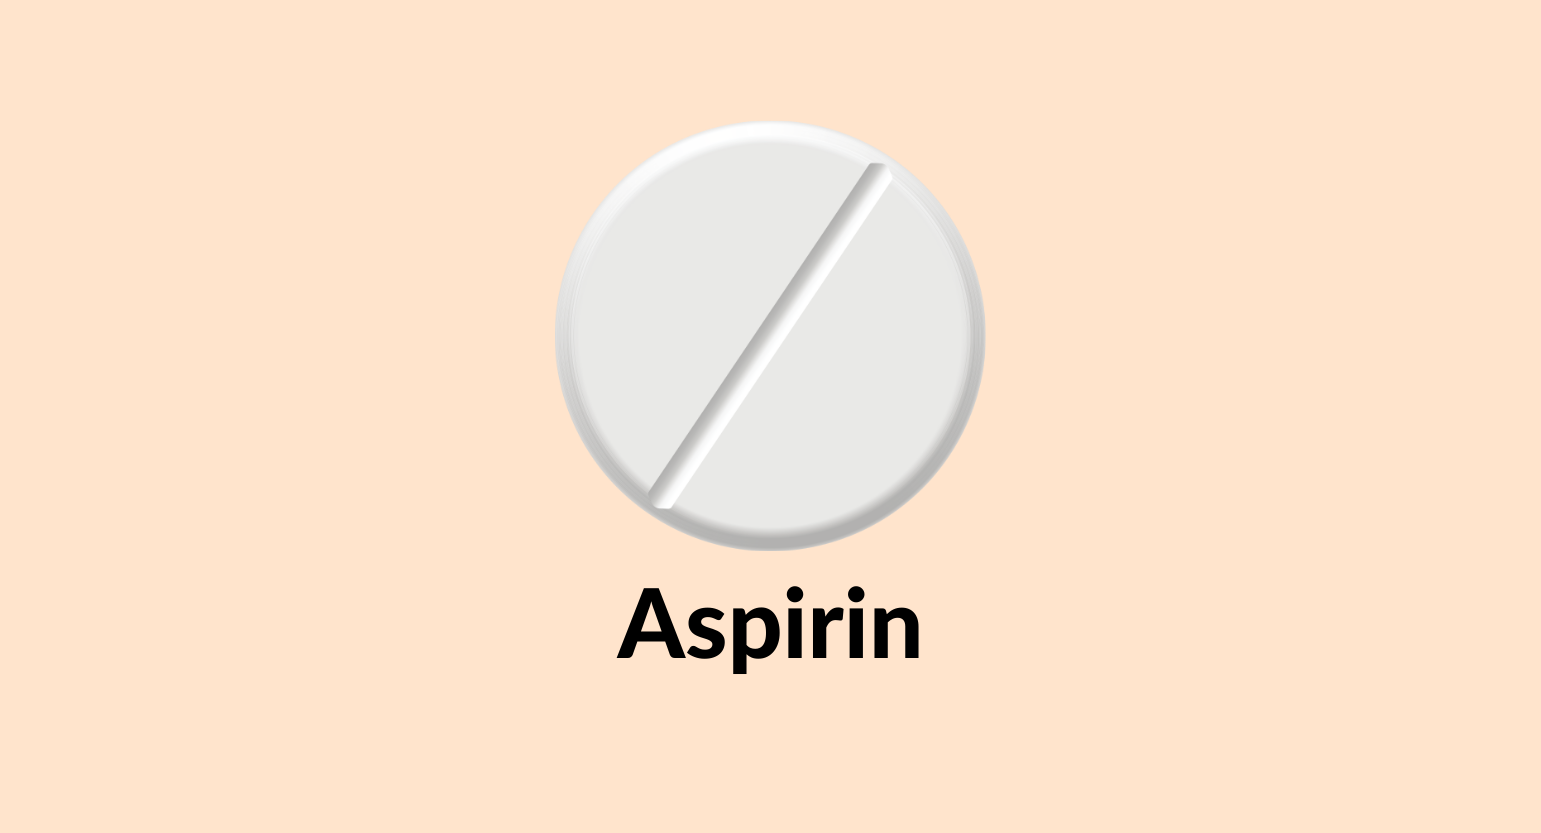 Illustration of an aspirin tablet.